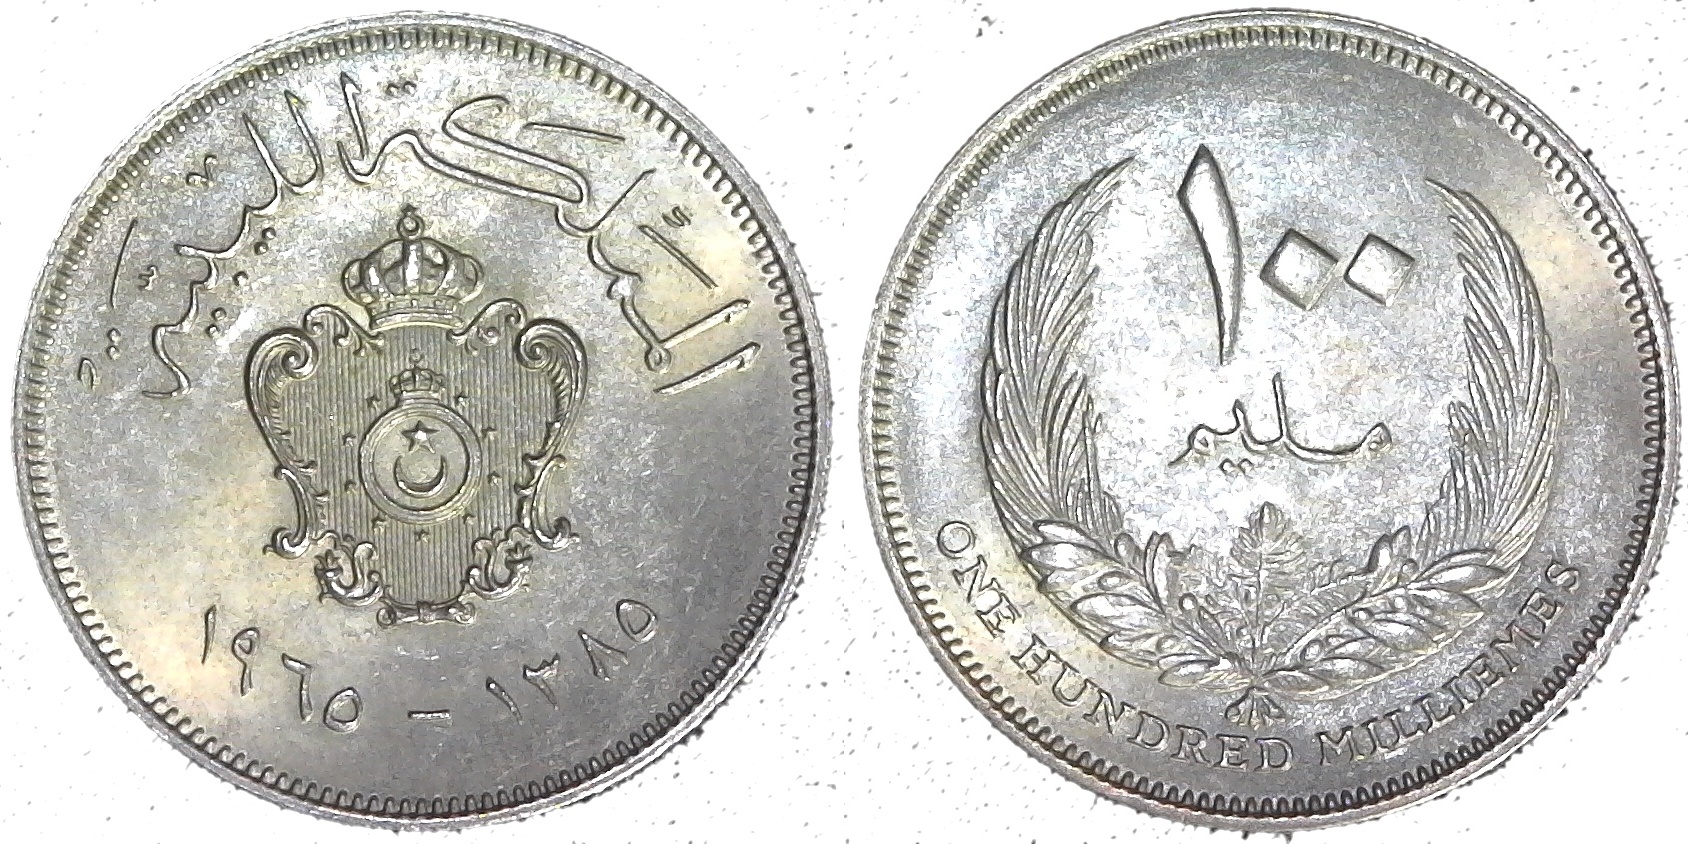 Libya 100 Milliemes 1965 obv-cutout-side.jpg